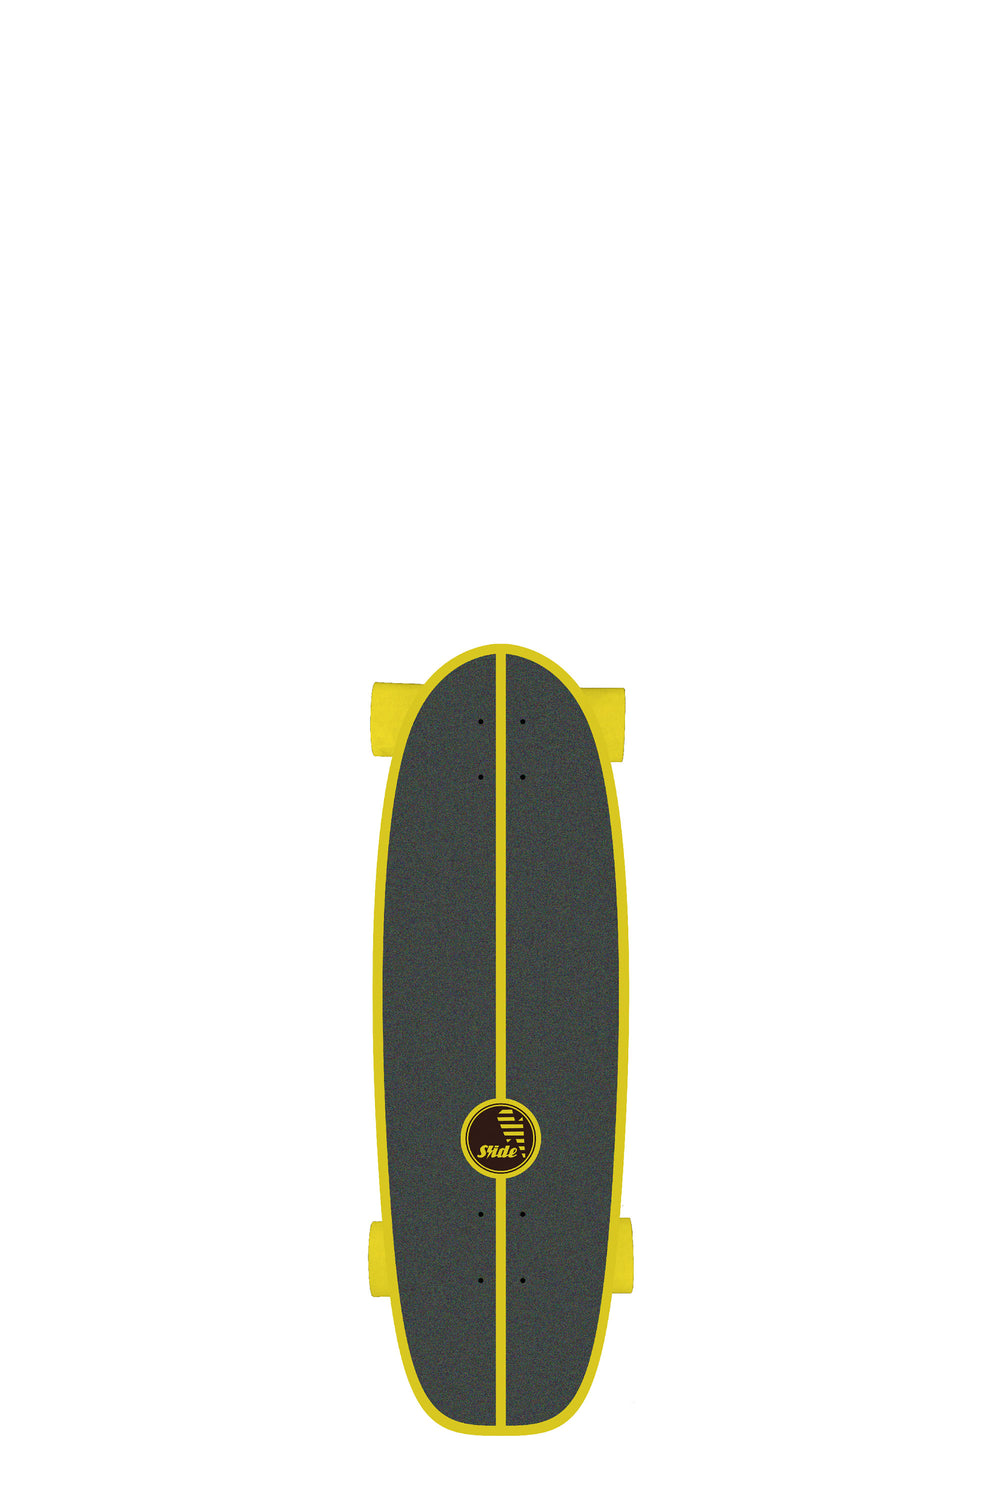 PUKAS-SURF-SHOP-SURFSKATE-SLIDE-GUSSIE-SPOON